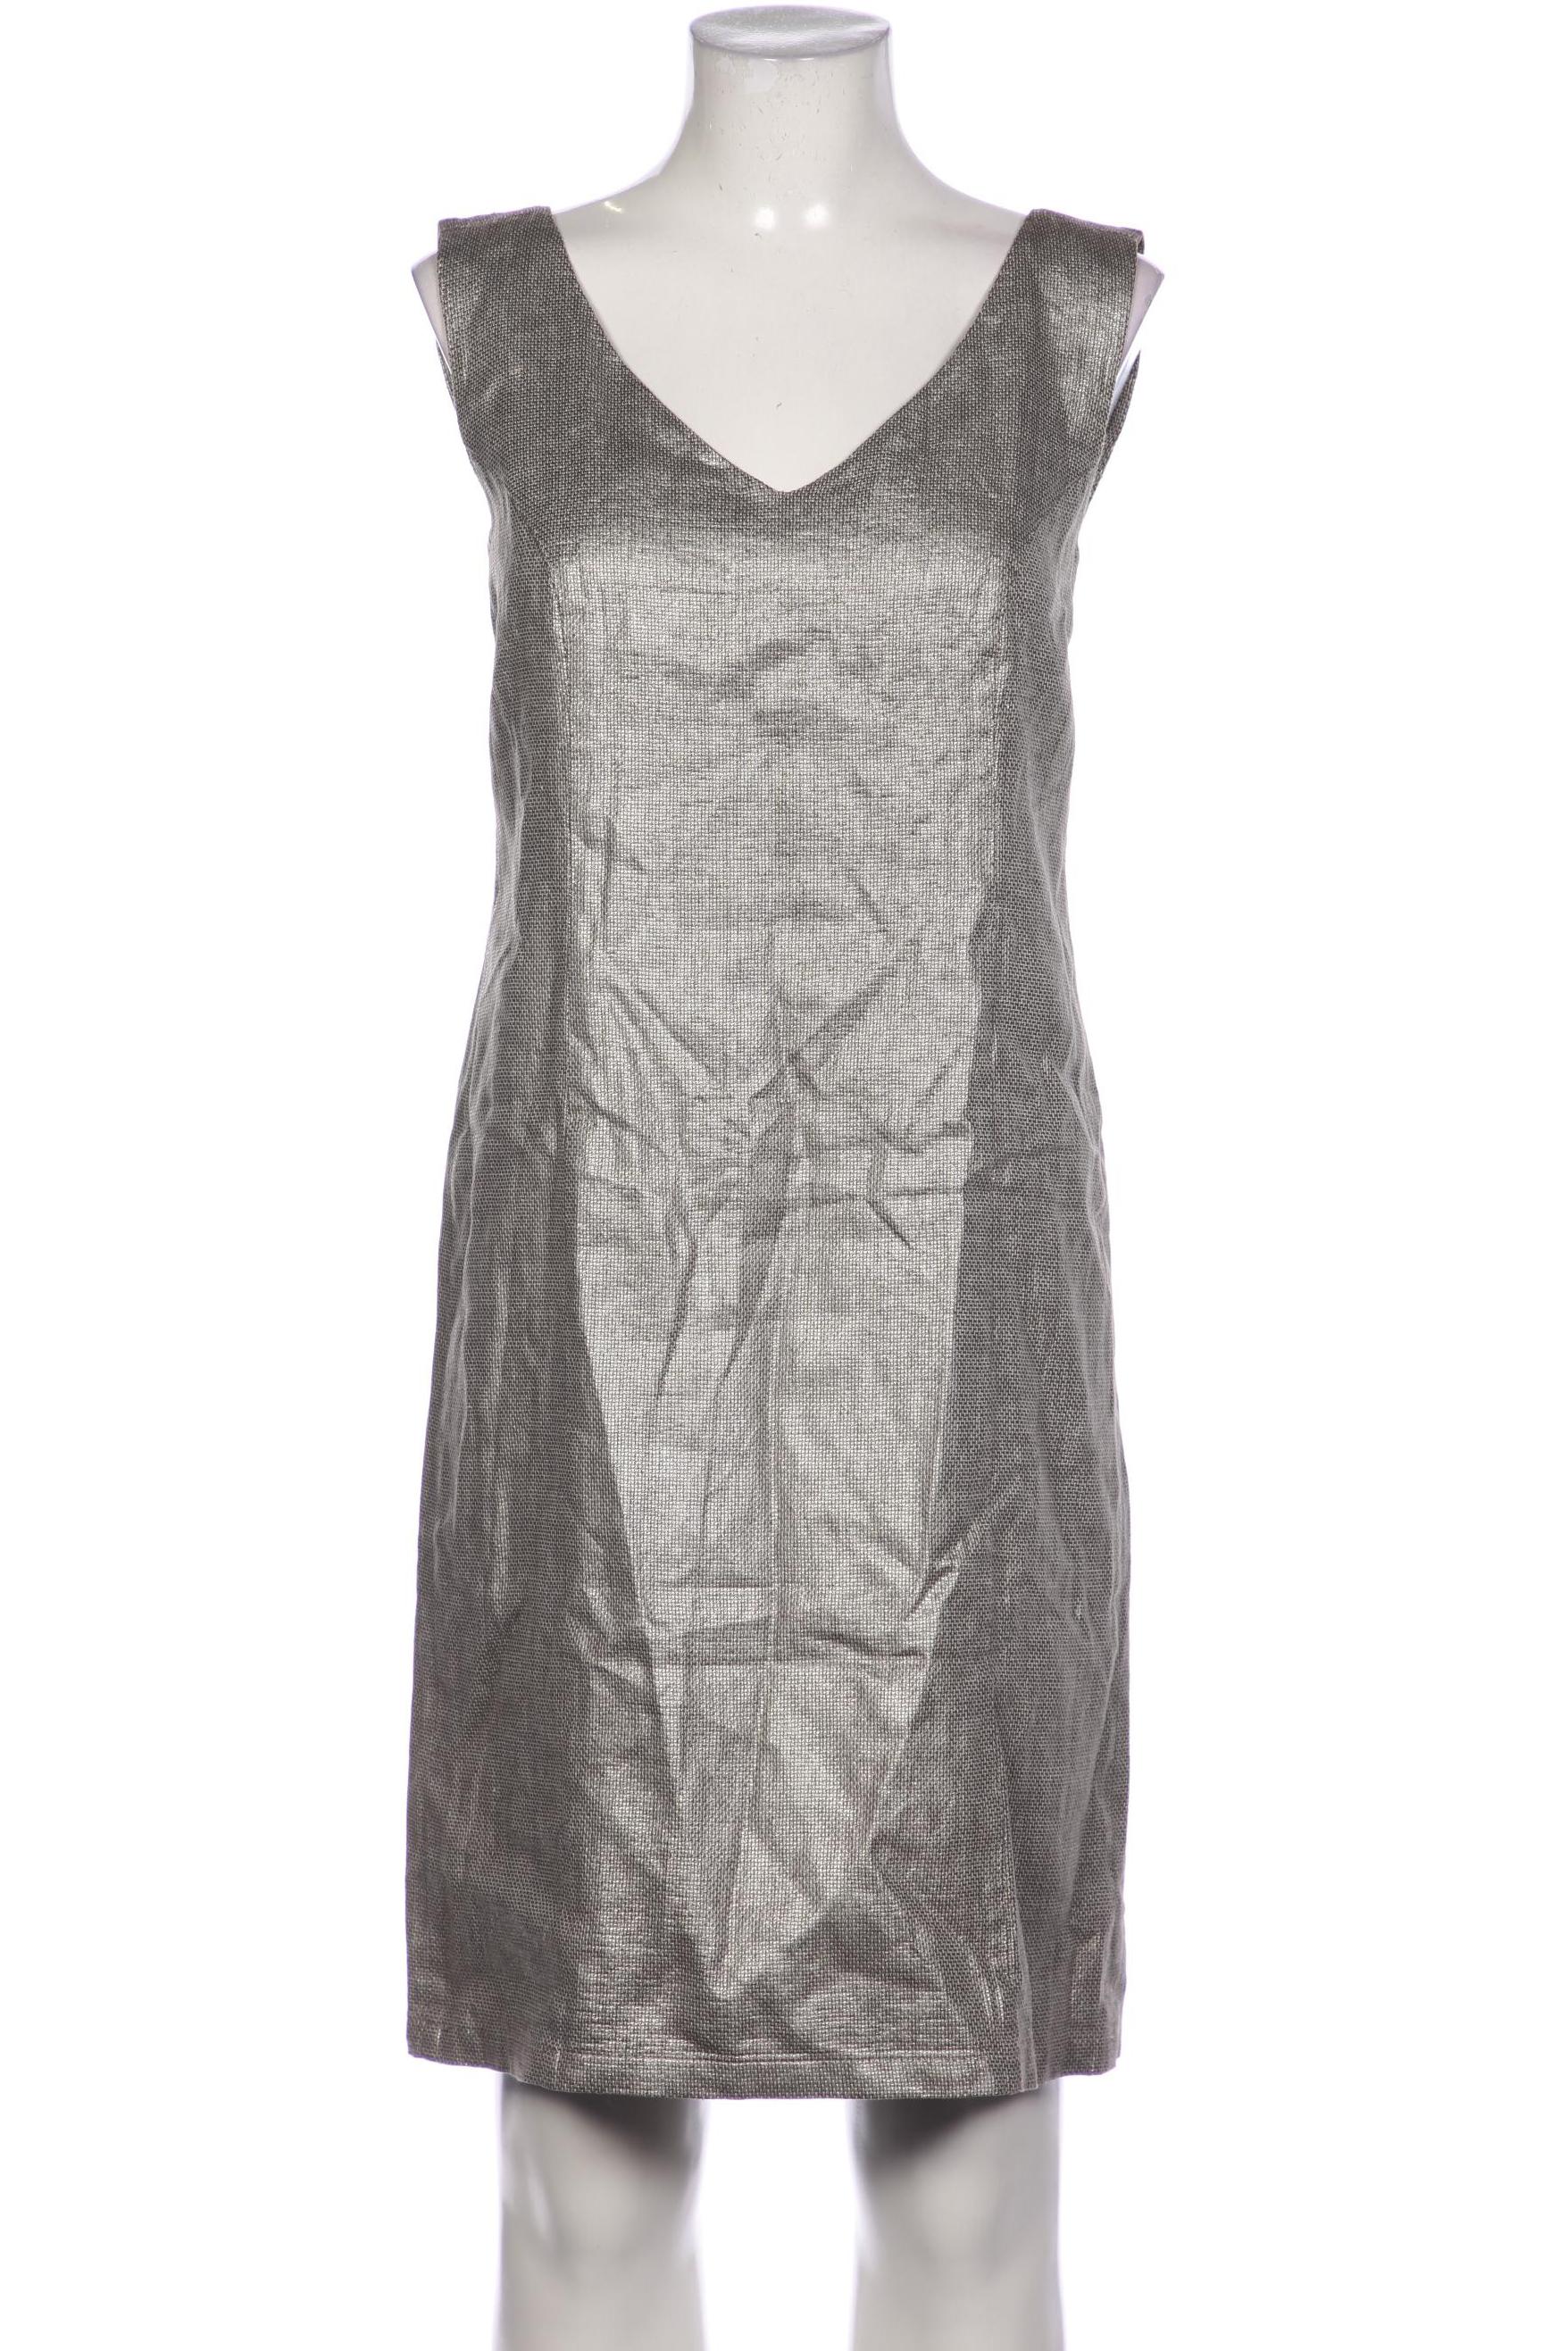 Minx Damen Kleid, silber, Gr. 36 von MINX